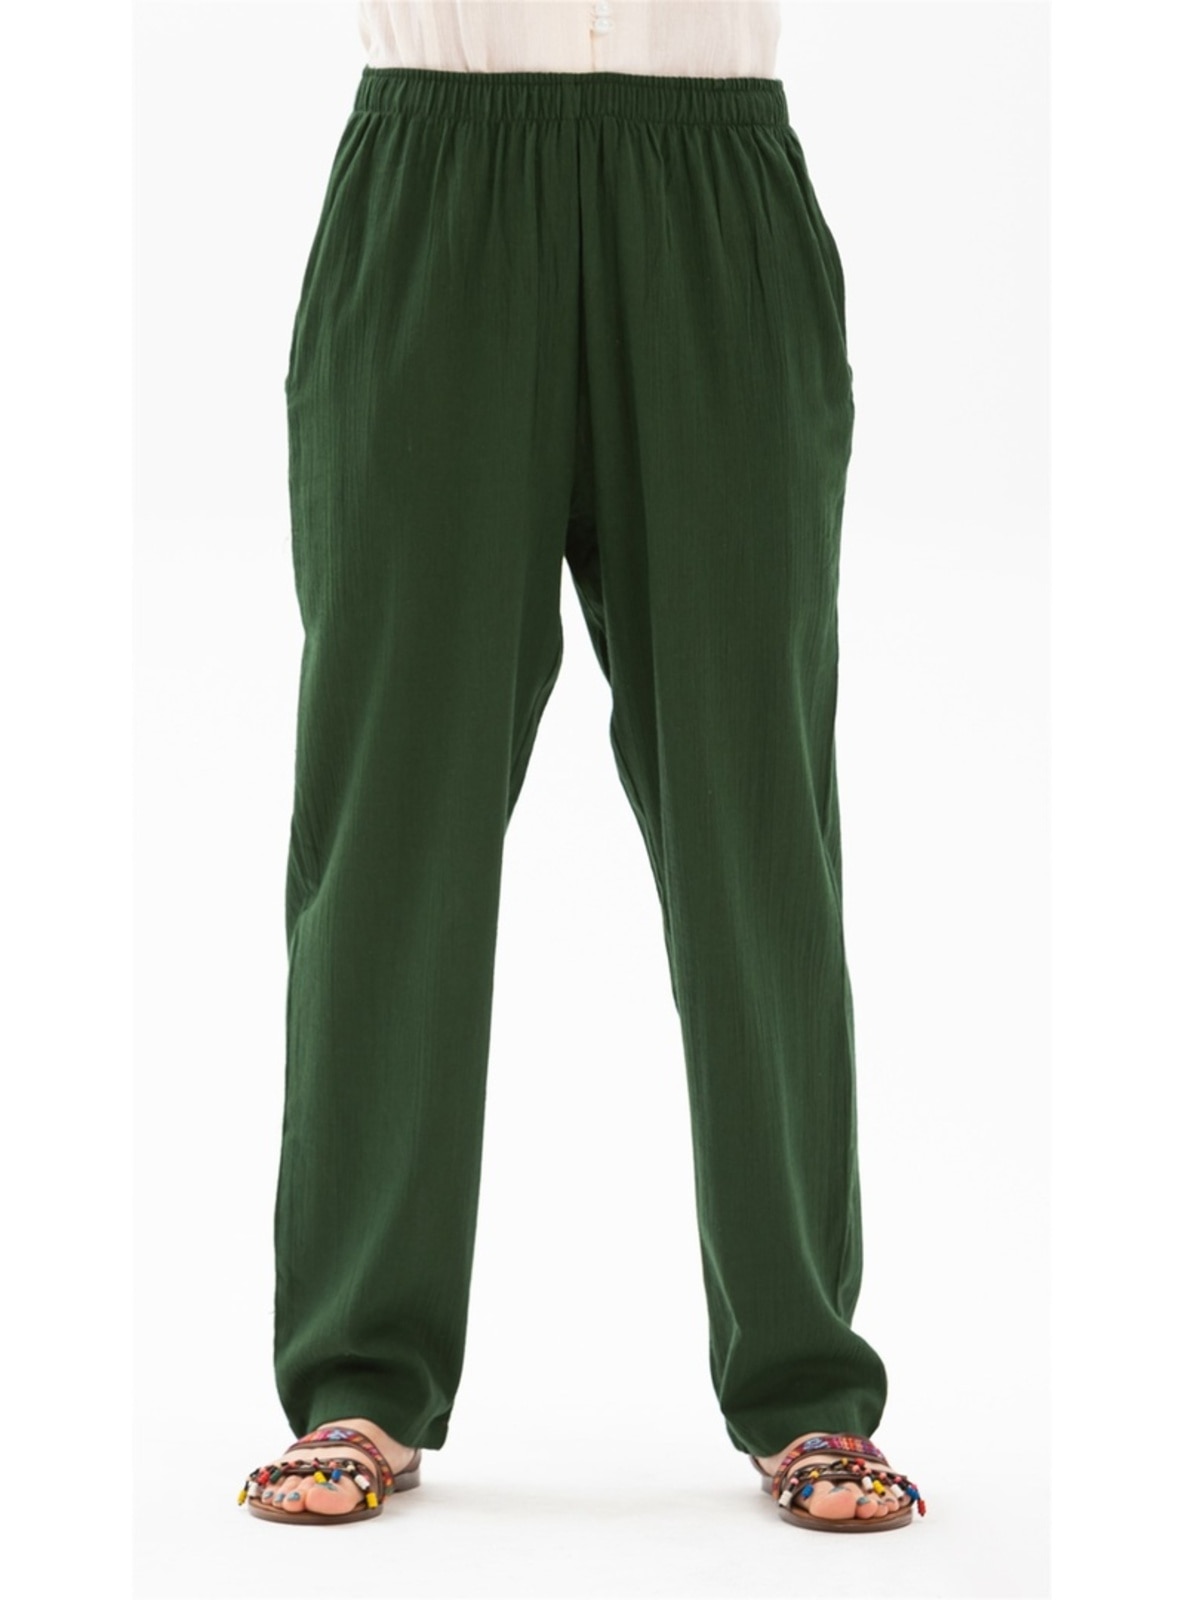 Green - Cotton - Pants